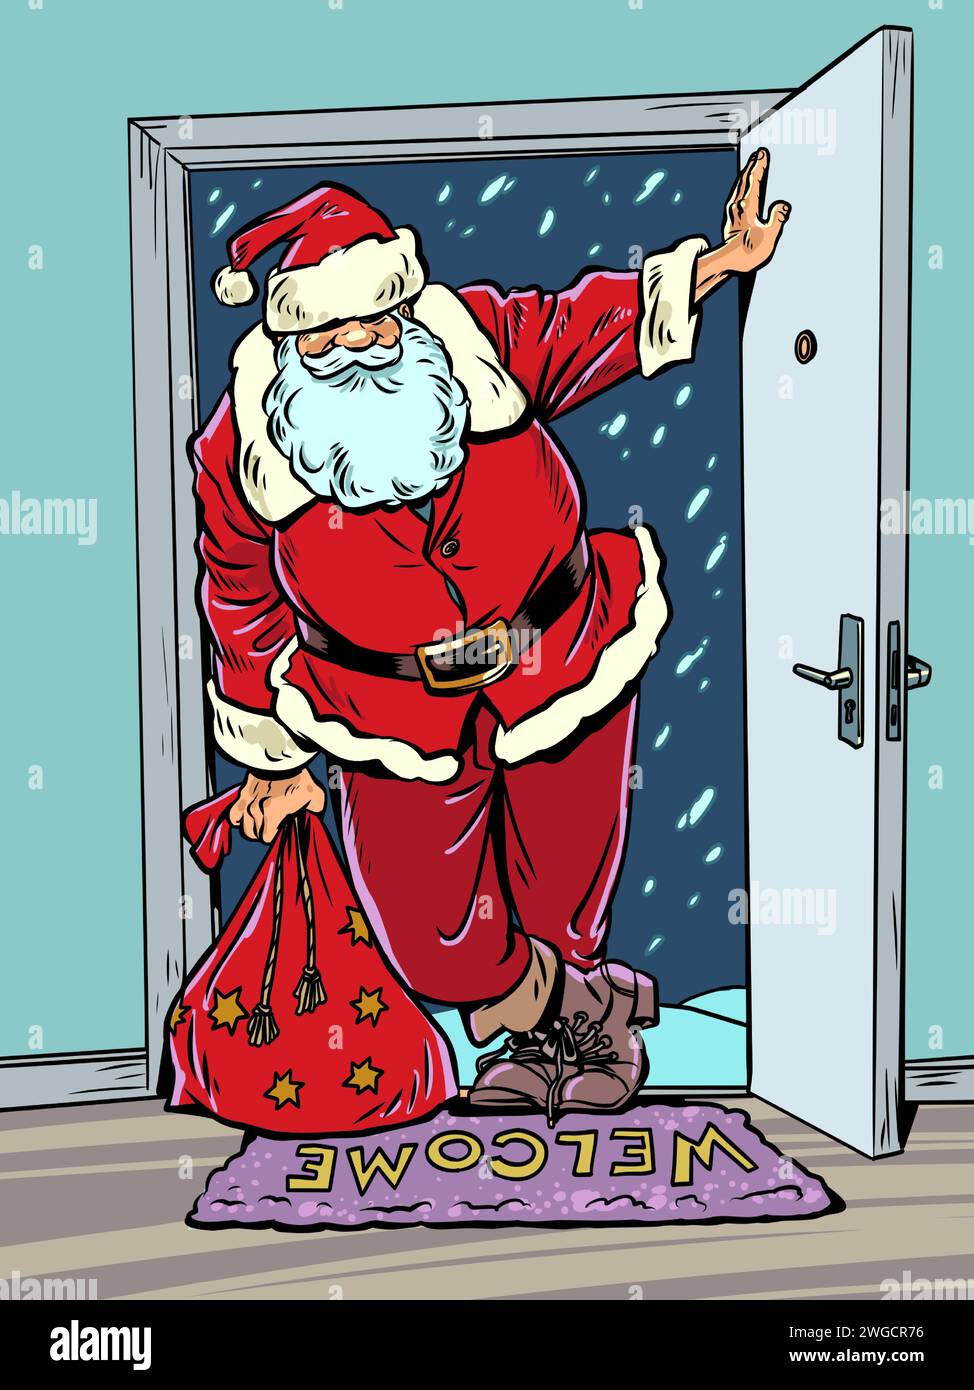 Le prochain Noël arrive dans la maison. Le Père Noël ouvrit la porte respirante de la tempête de neige. Réveillon du nouvel an et livraison de cadeaux partout Illustration de Vecteur